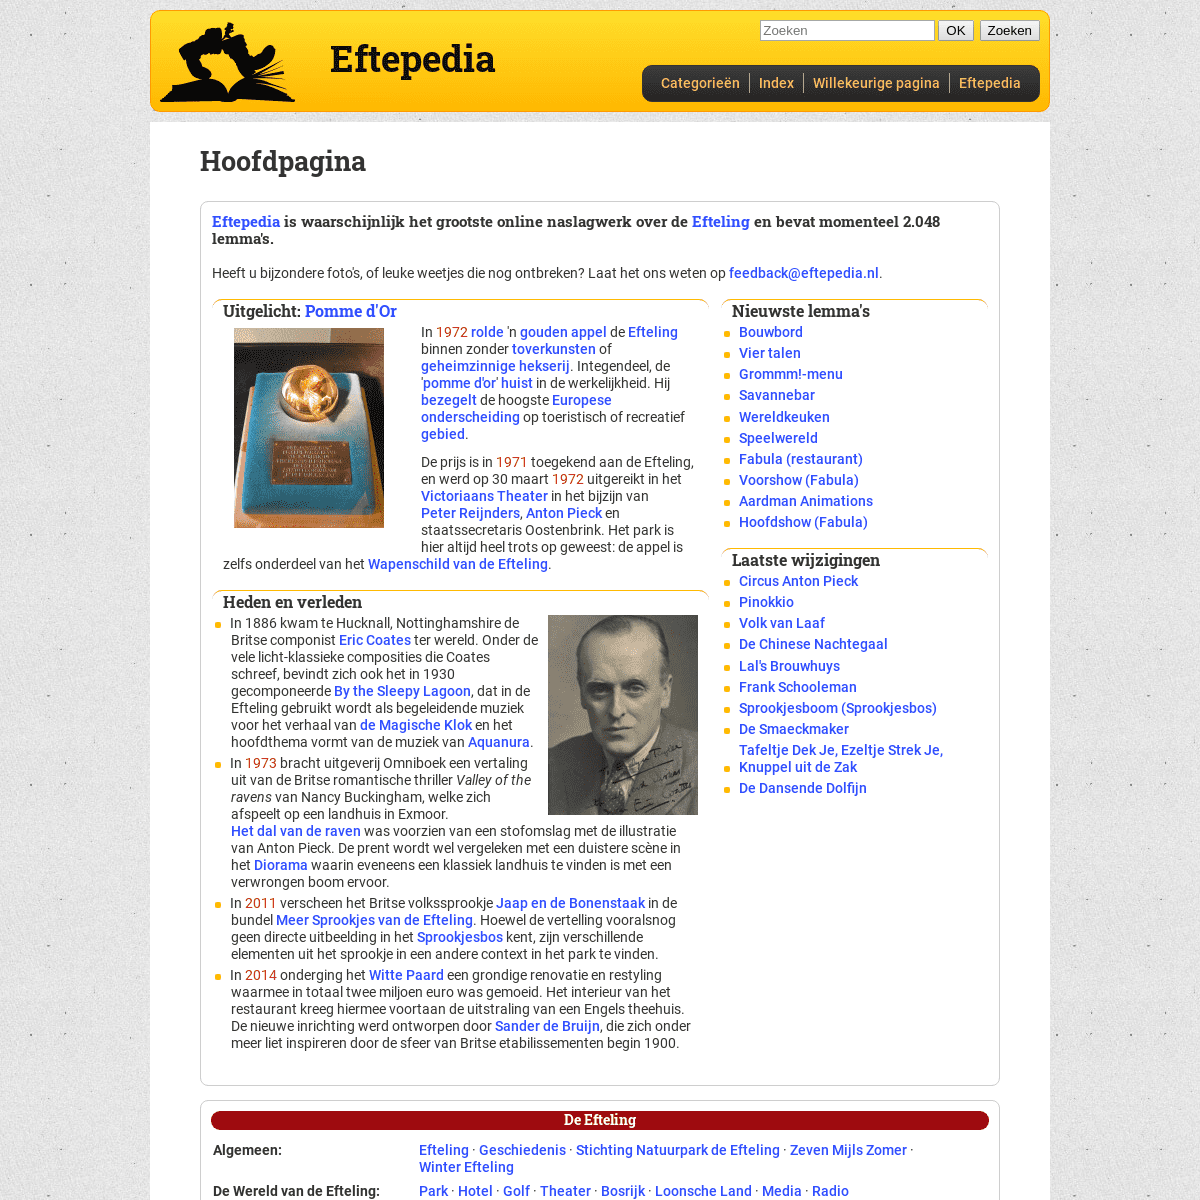 A complete backup of eftepedia.nl